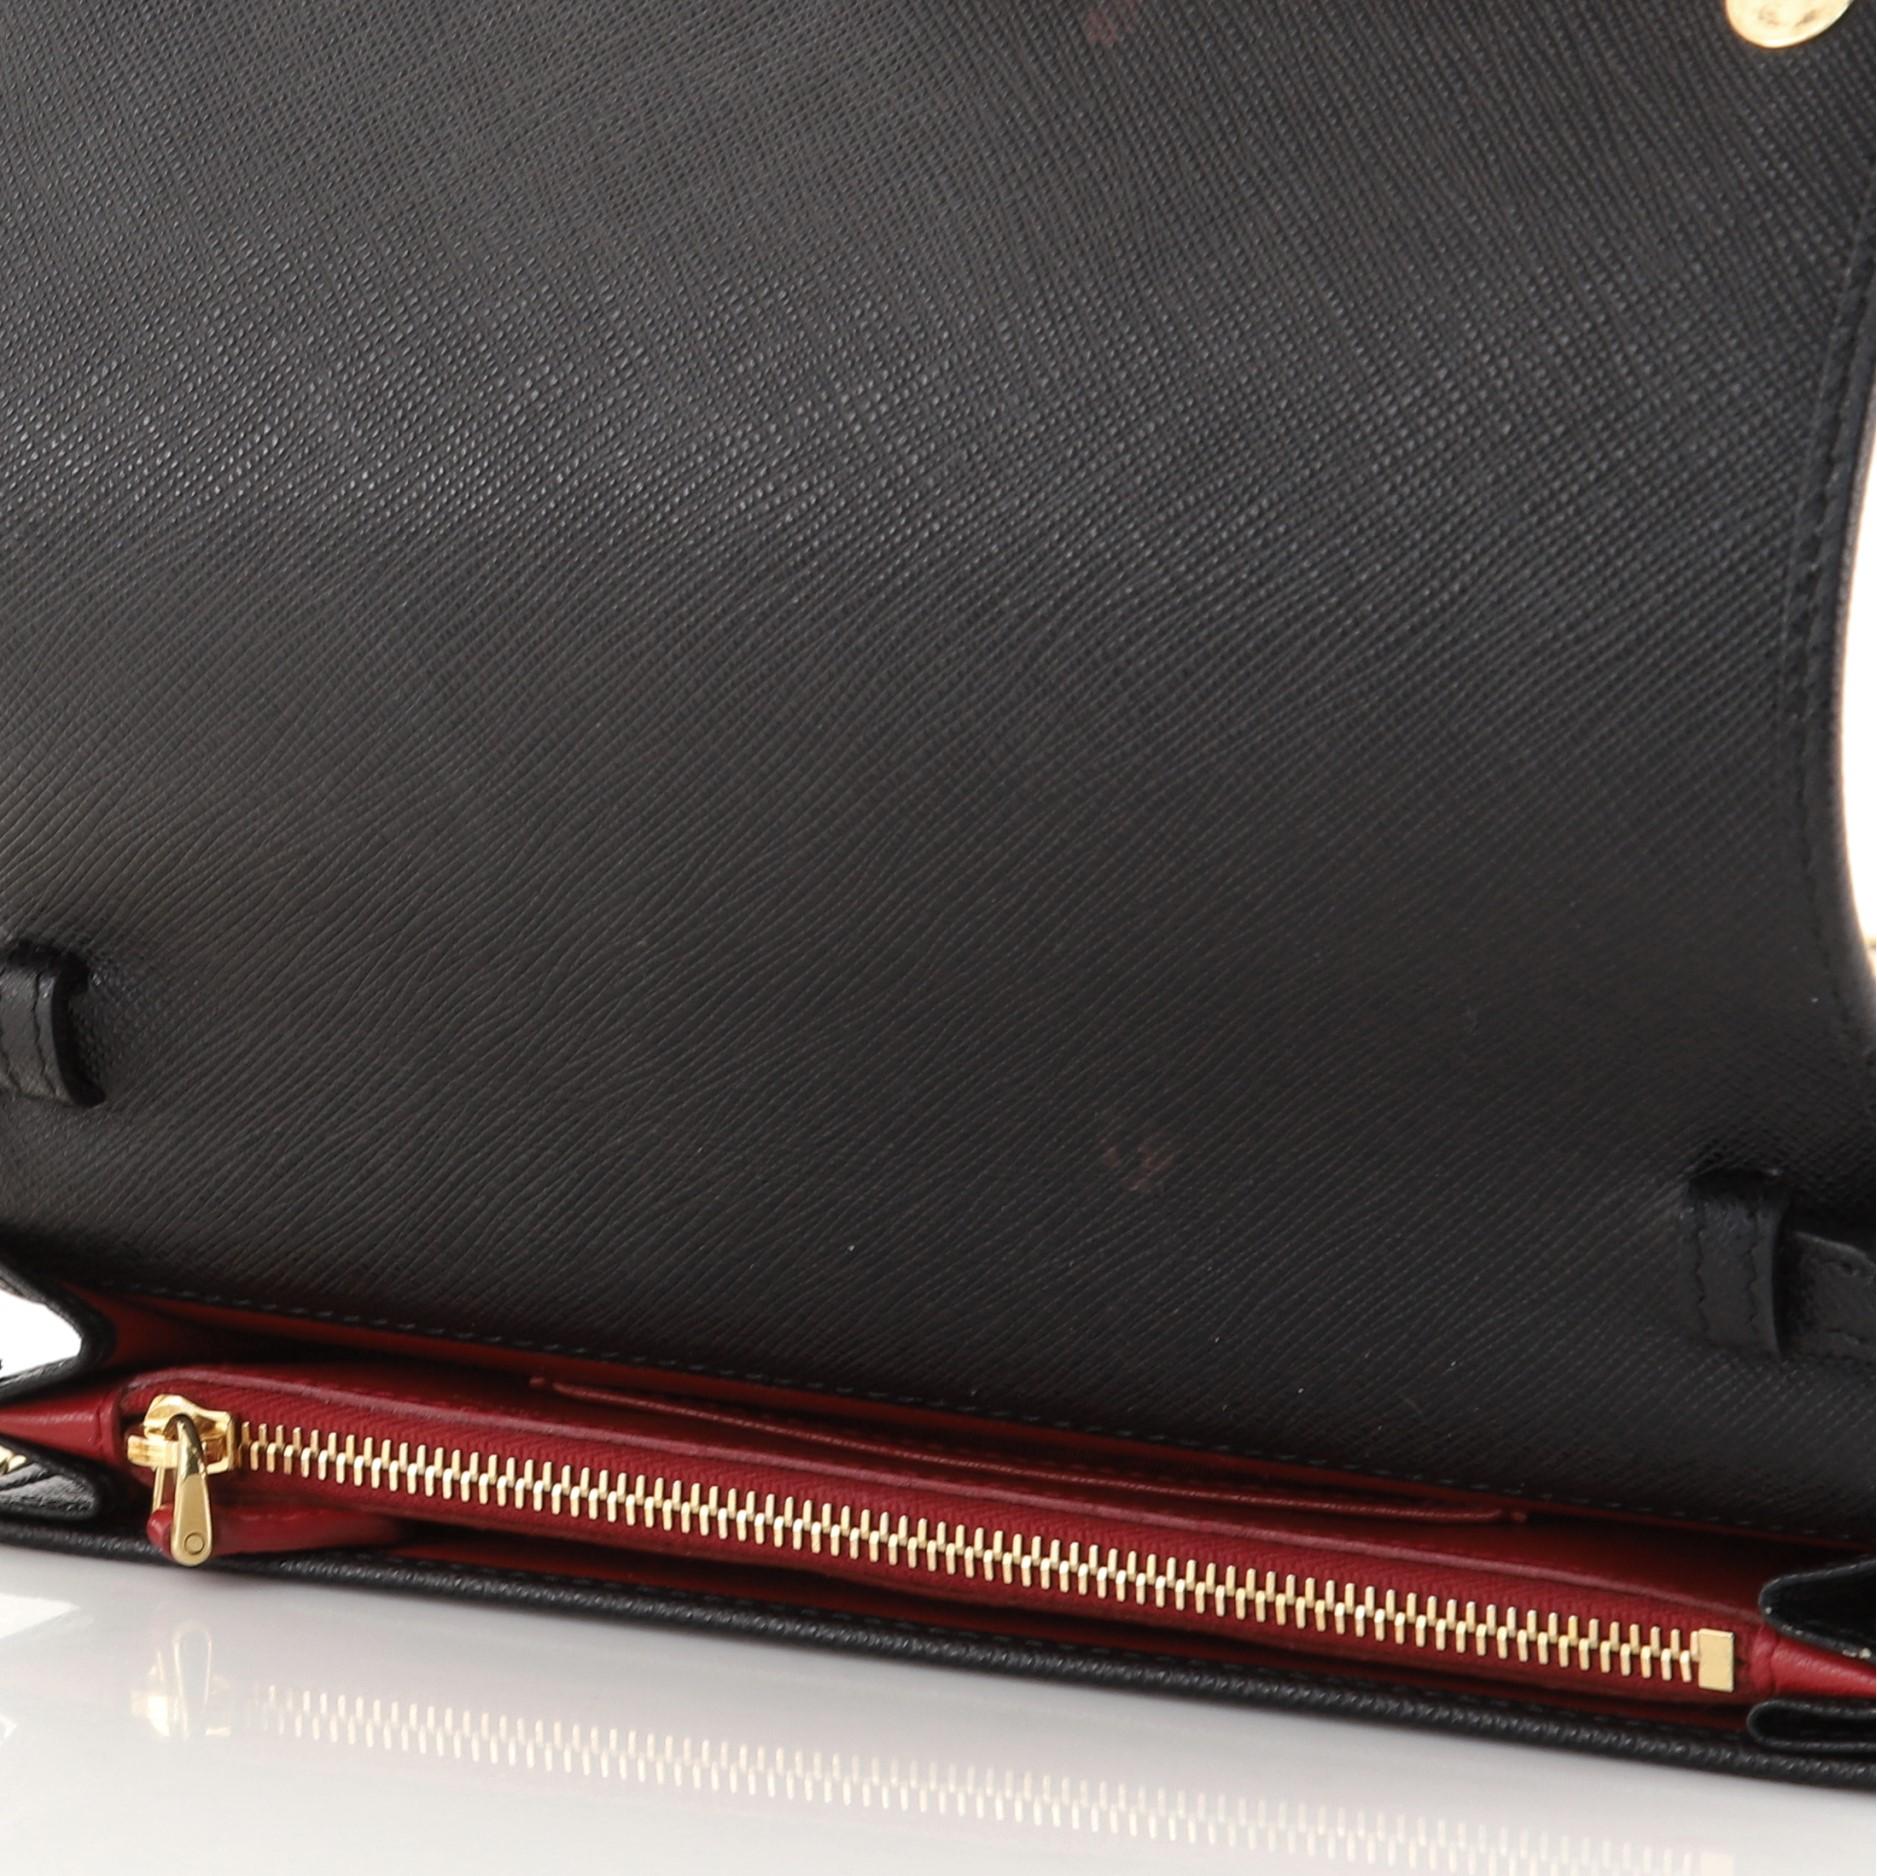 Black Prada Monochrome Chain Flap Bag Saffiano Leather Small